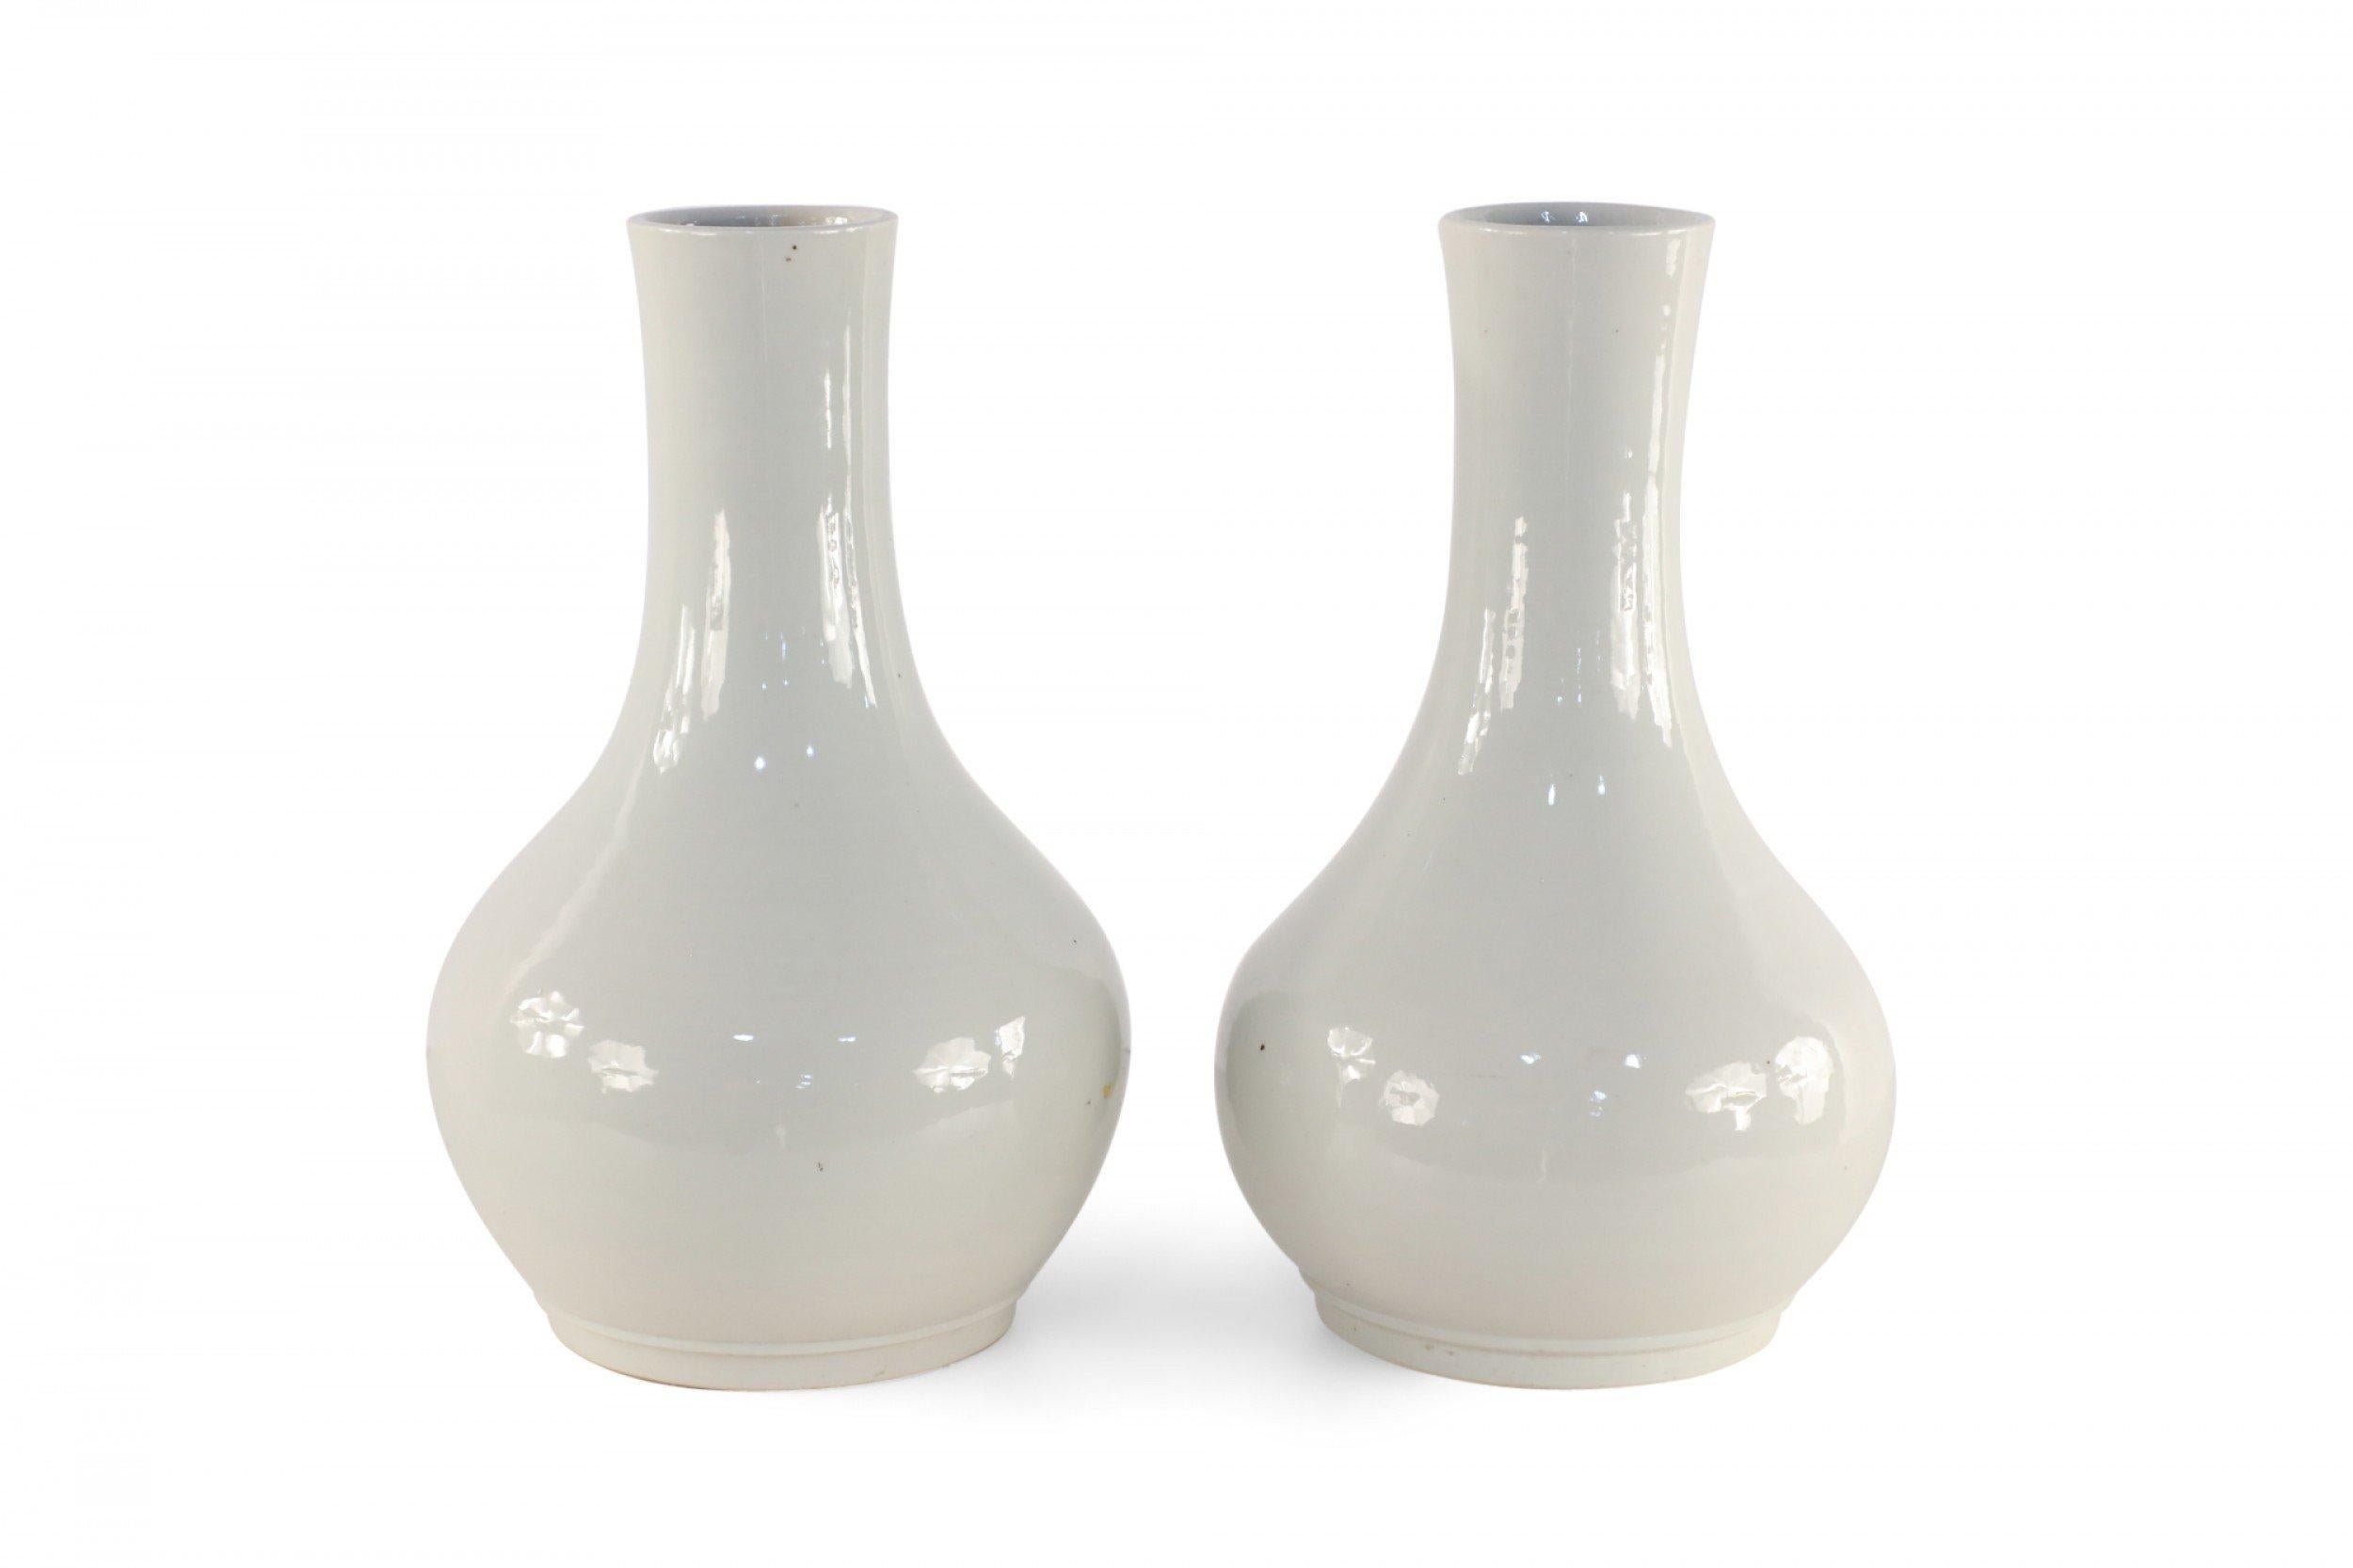 Paar ähnlicher chinesischer Porzellanvasen mit kugelförmigen Formen in blassgrauen Farbtönen mit glasierten Oberflächen (Vasen variieren leicht in der Form) (PREIS FÜR Pärchen).
 